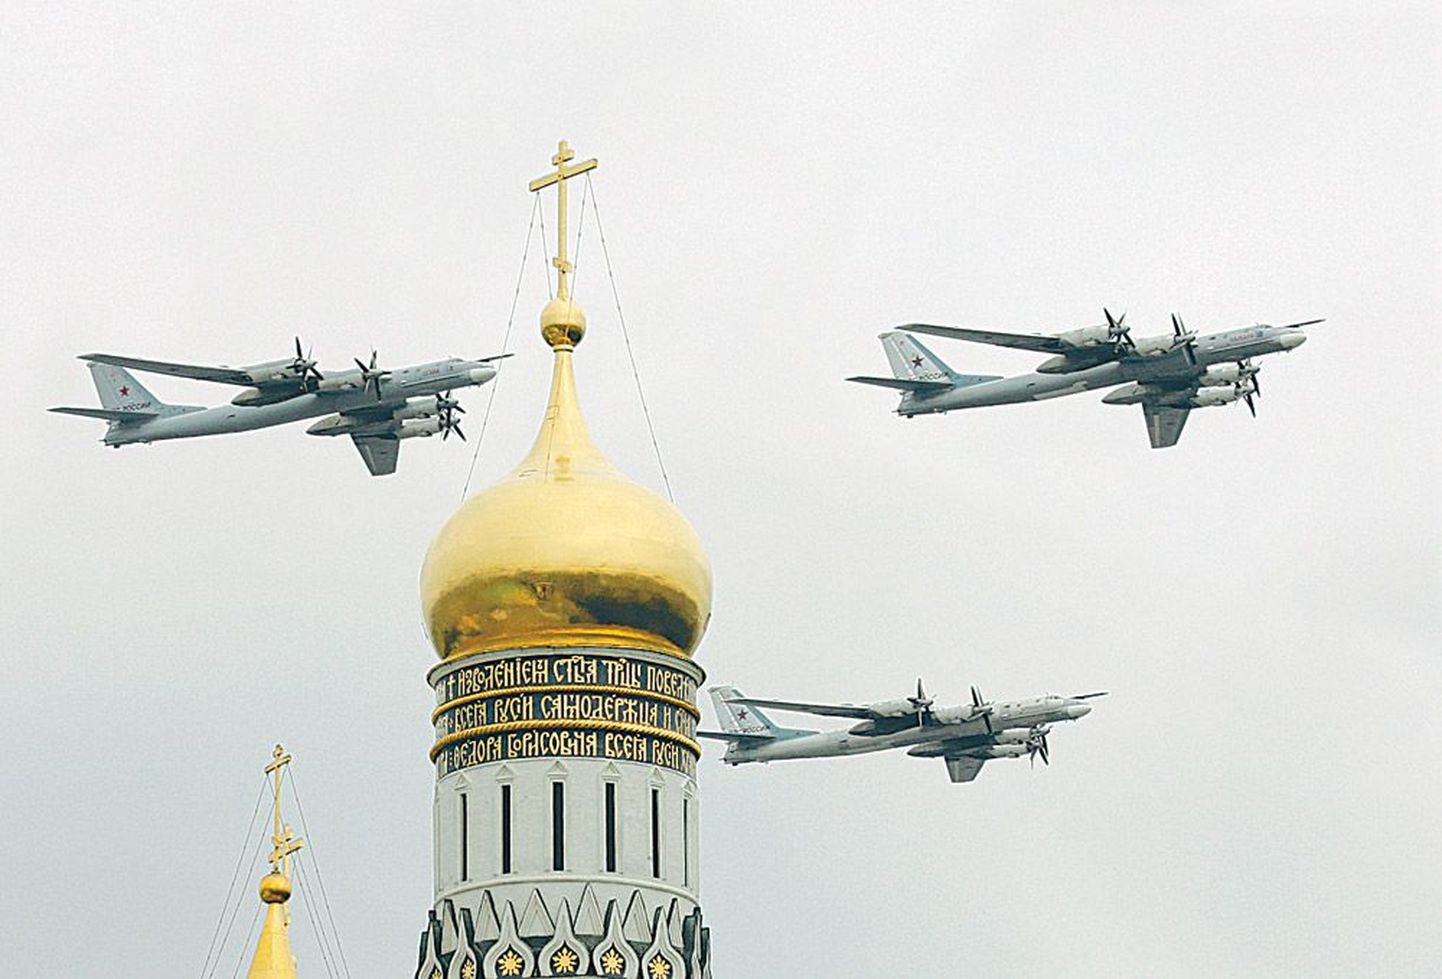 TU-99 pommitajad. Paraadist võtab osa 127 lennukit ja kopterit, kusjuures 23 hävitajat lendavad pühapäeval üle Punase väljaku nii, et moodustavad numbri 65.